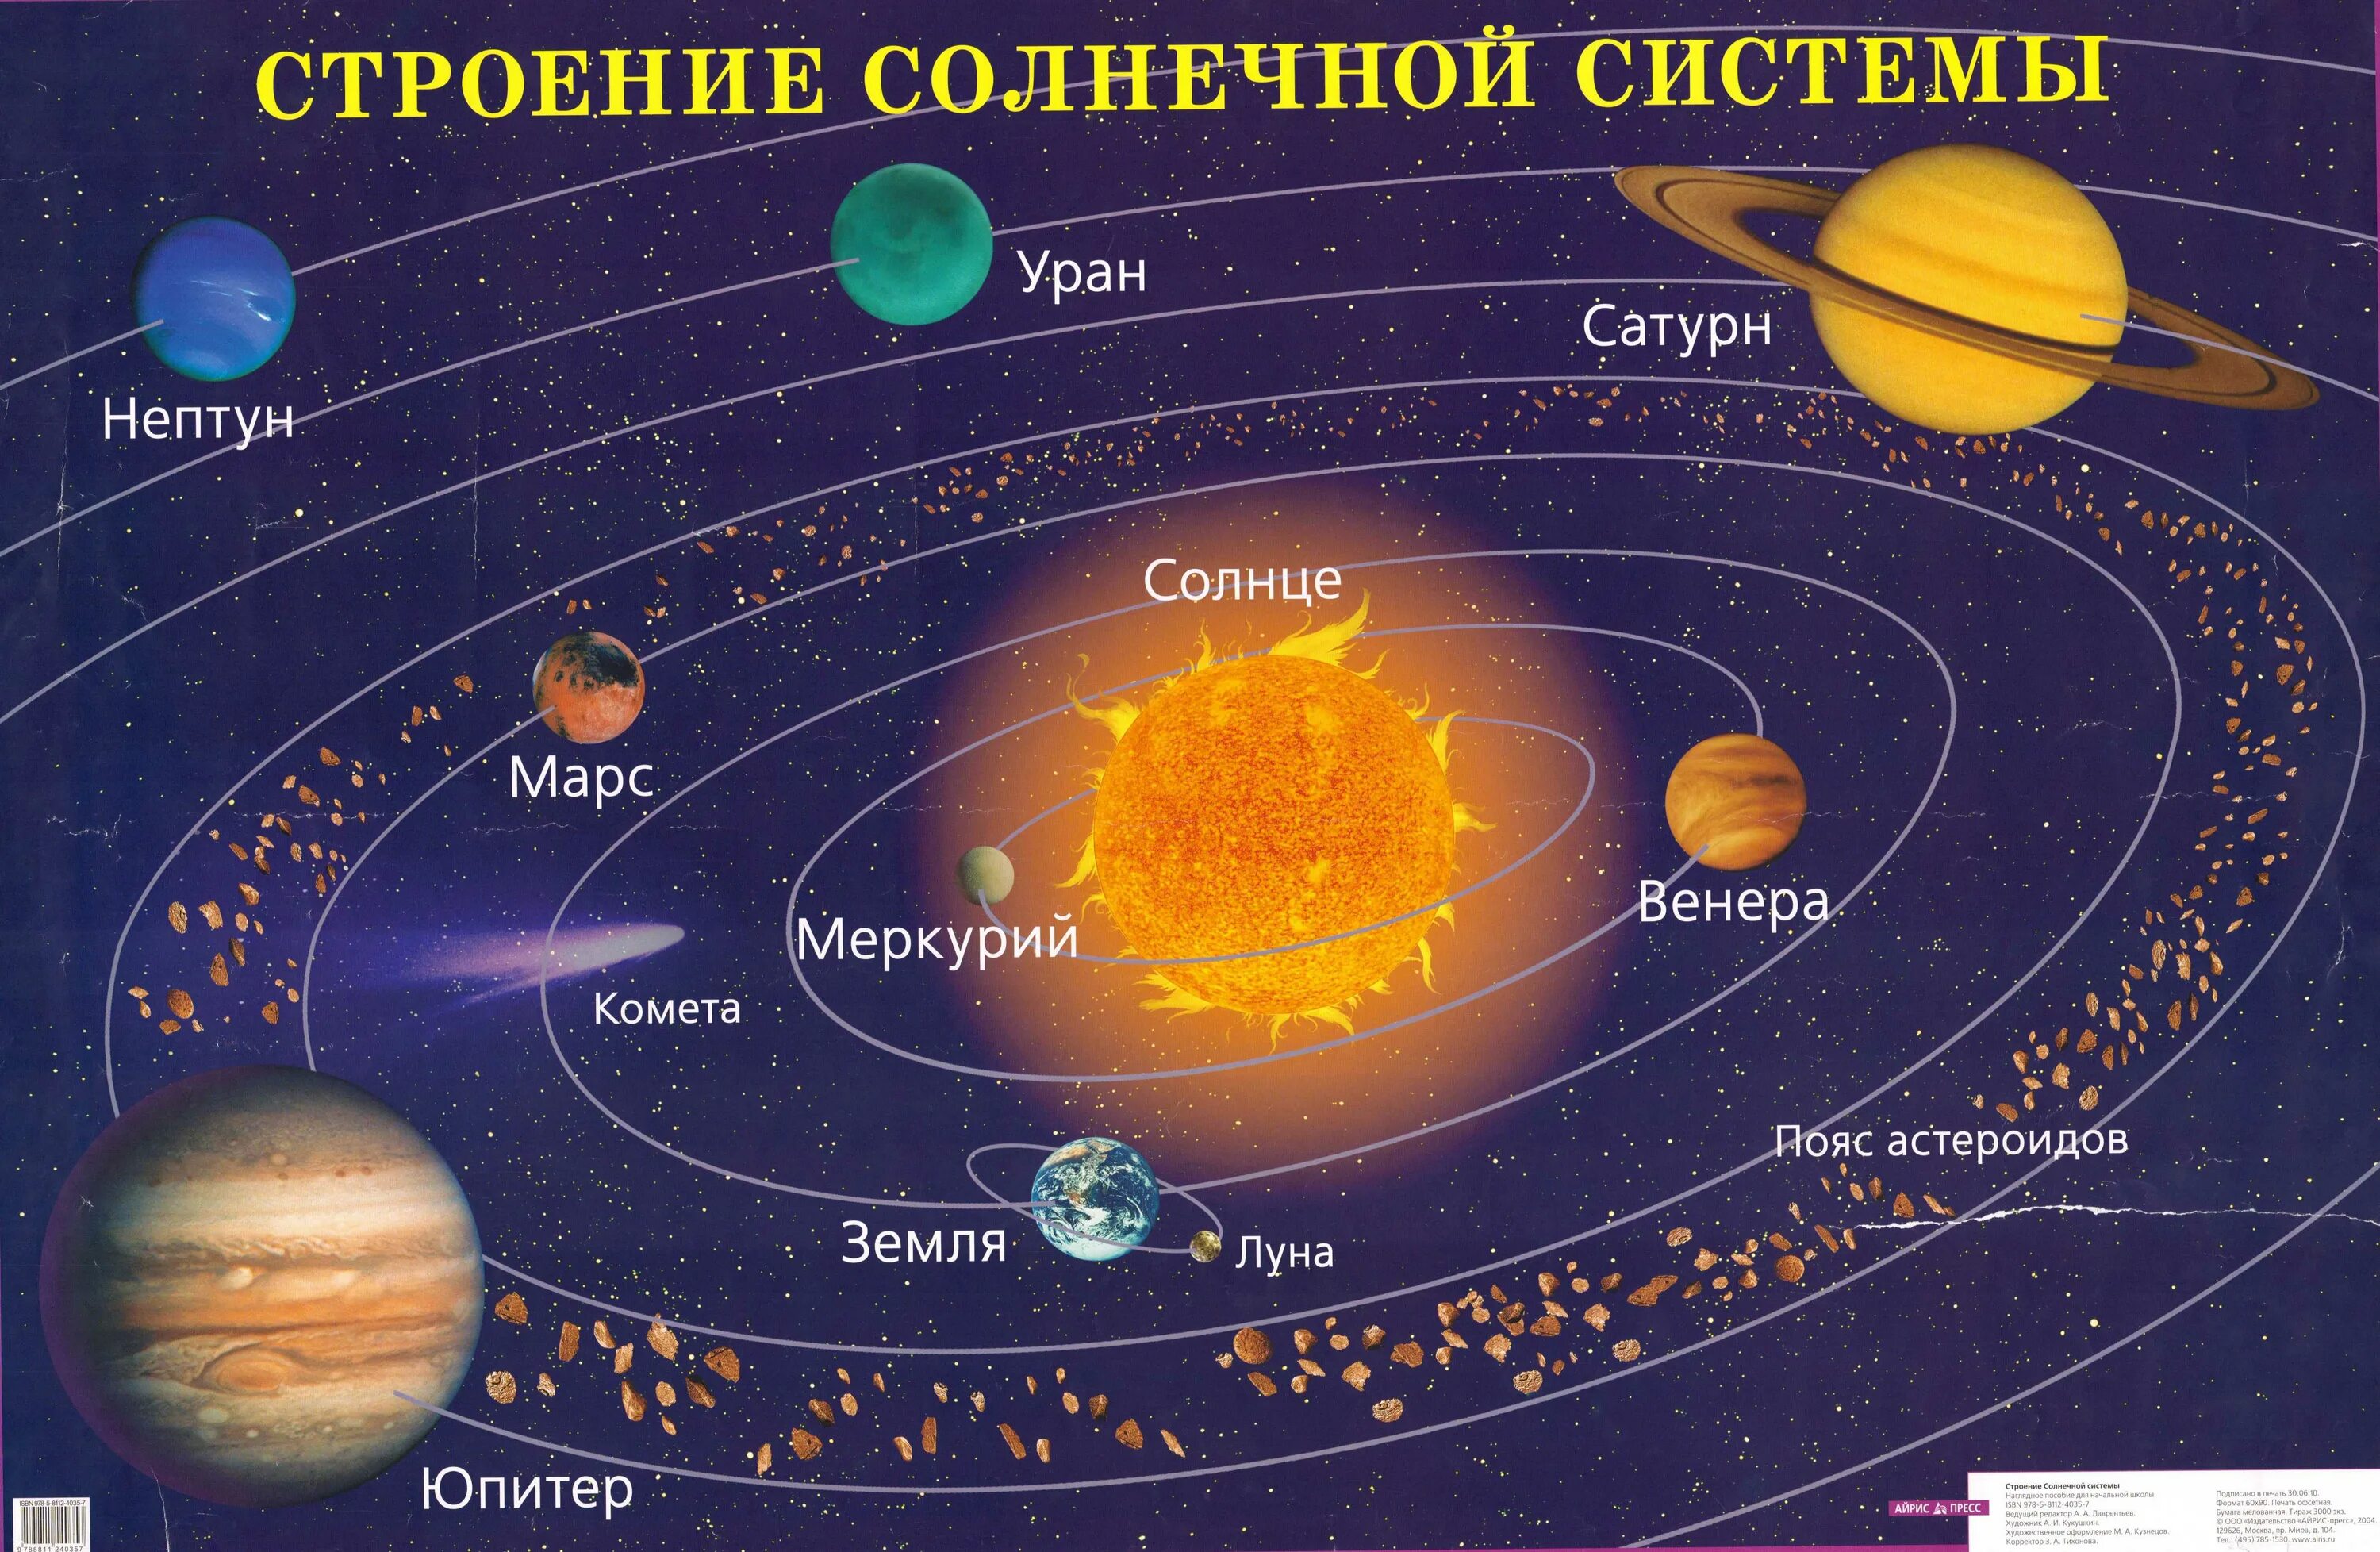 5 по счету планета. Солнечная система с названиями планет. Расположение планет солнечной системы. Строение и структура солнечной системы. Строение планет солнечной системы.